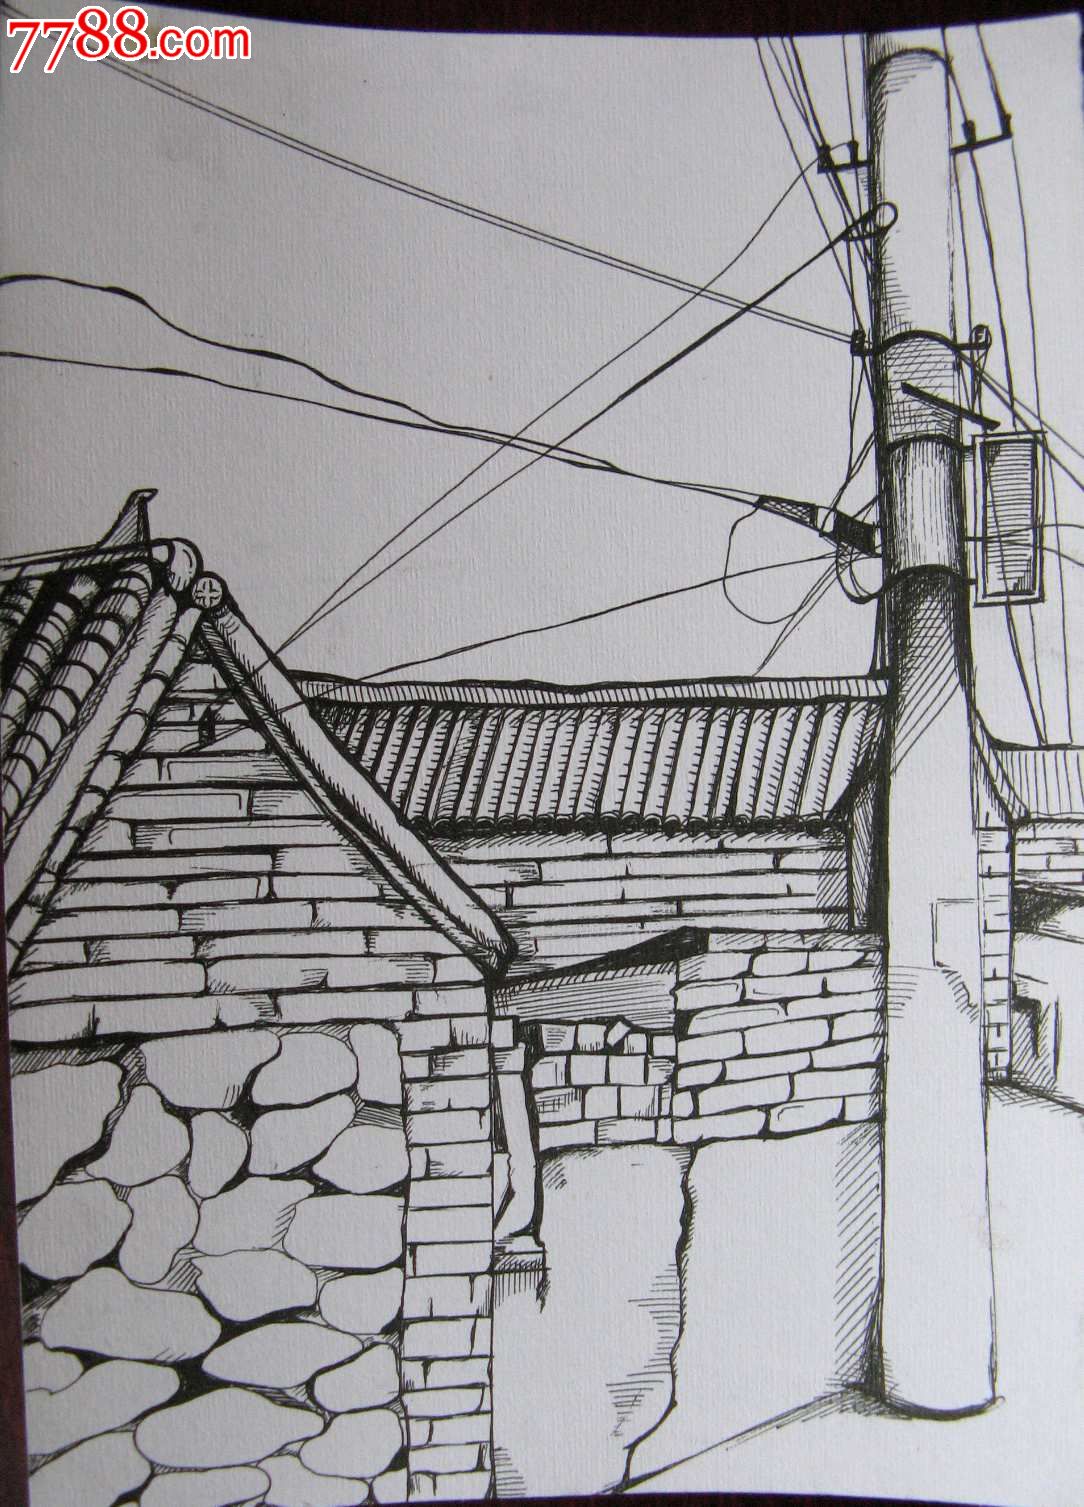 素描风景建筑画:大宅房屋与线杆